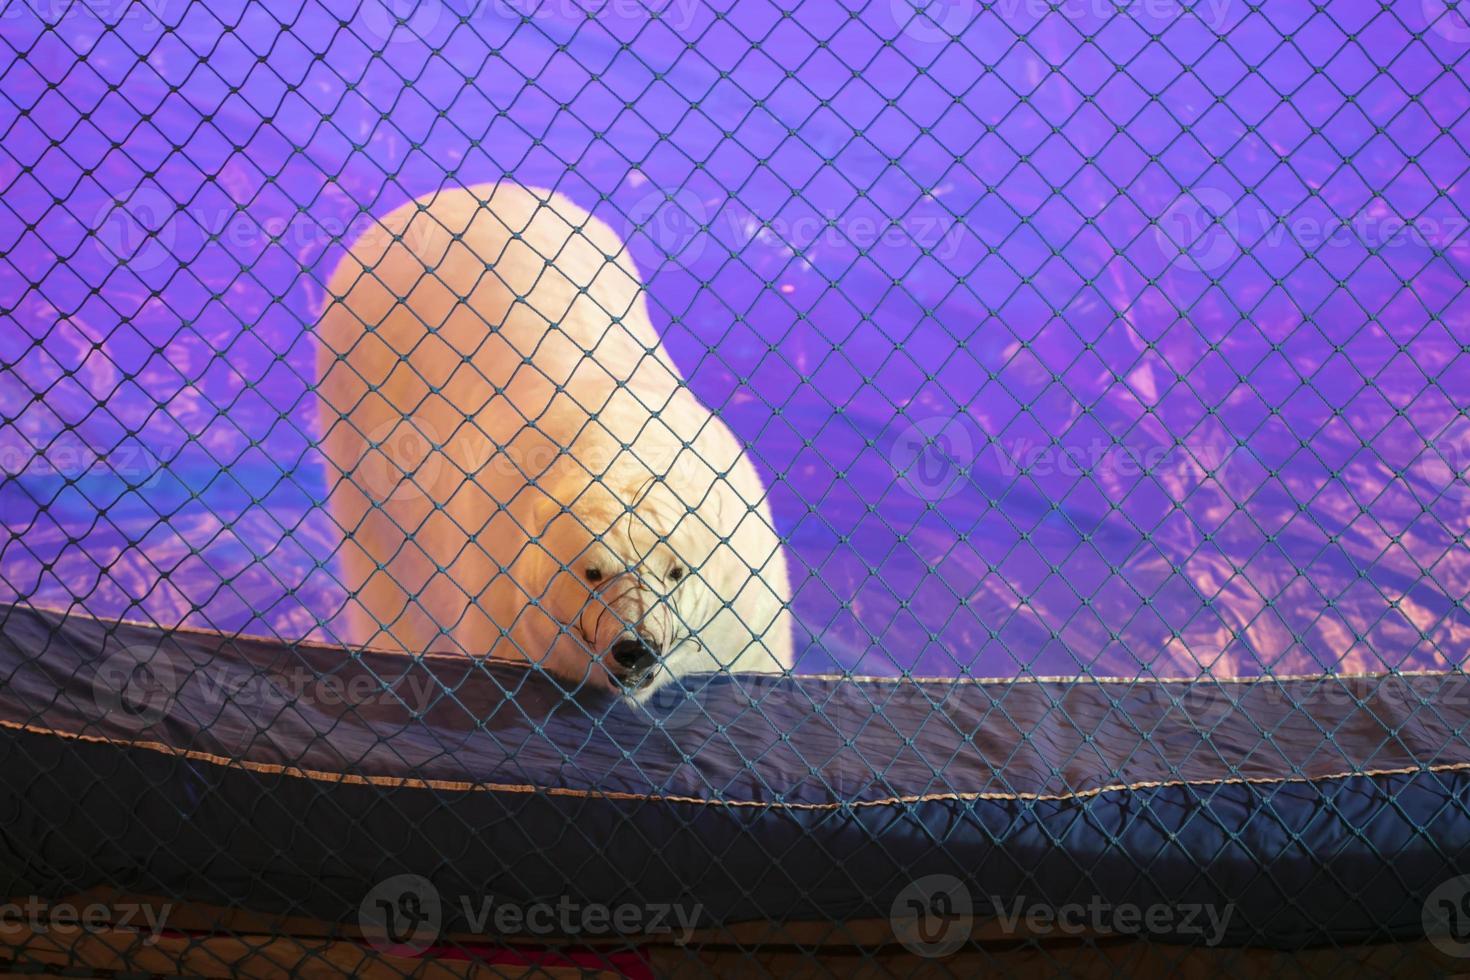 de polair beer in de circus looks van achter de netto met verdrietig ogen. foto